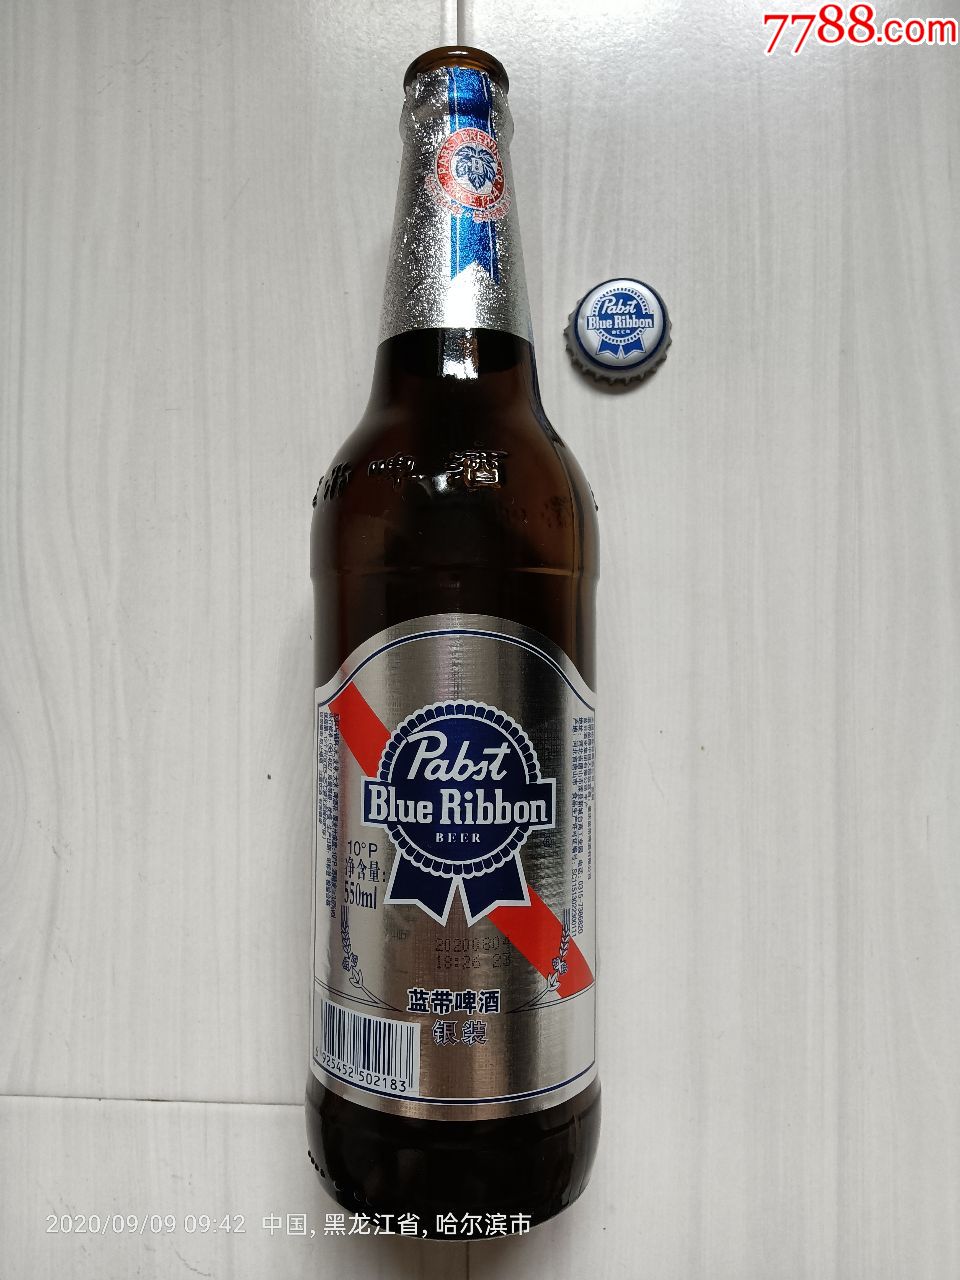 blueribbon蓝带啤酒·银装,美国pabst柏斯特酿造公司,550ml